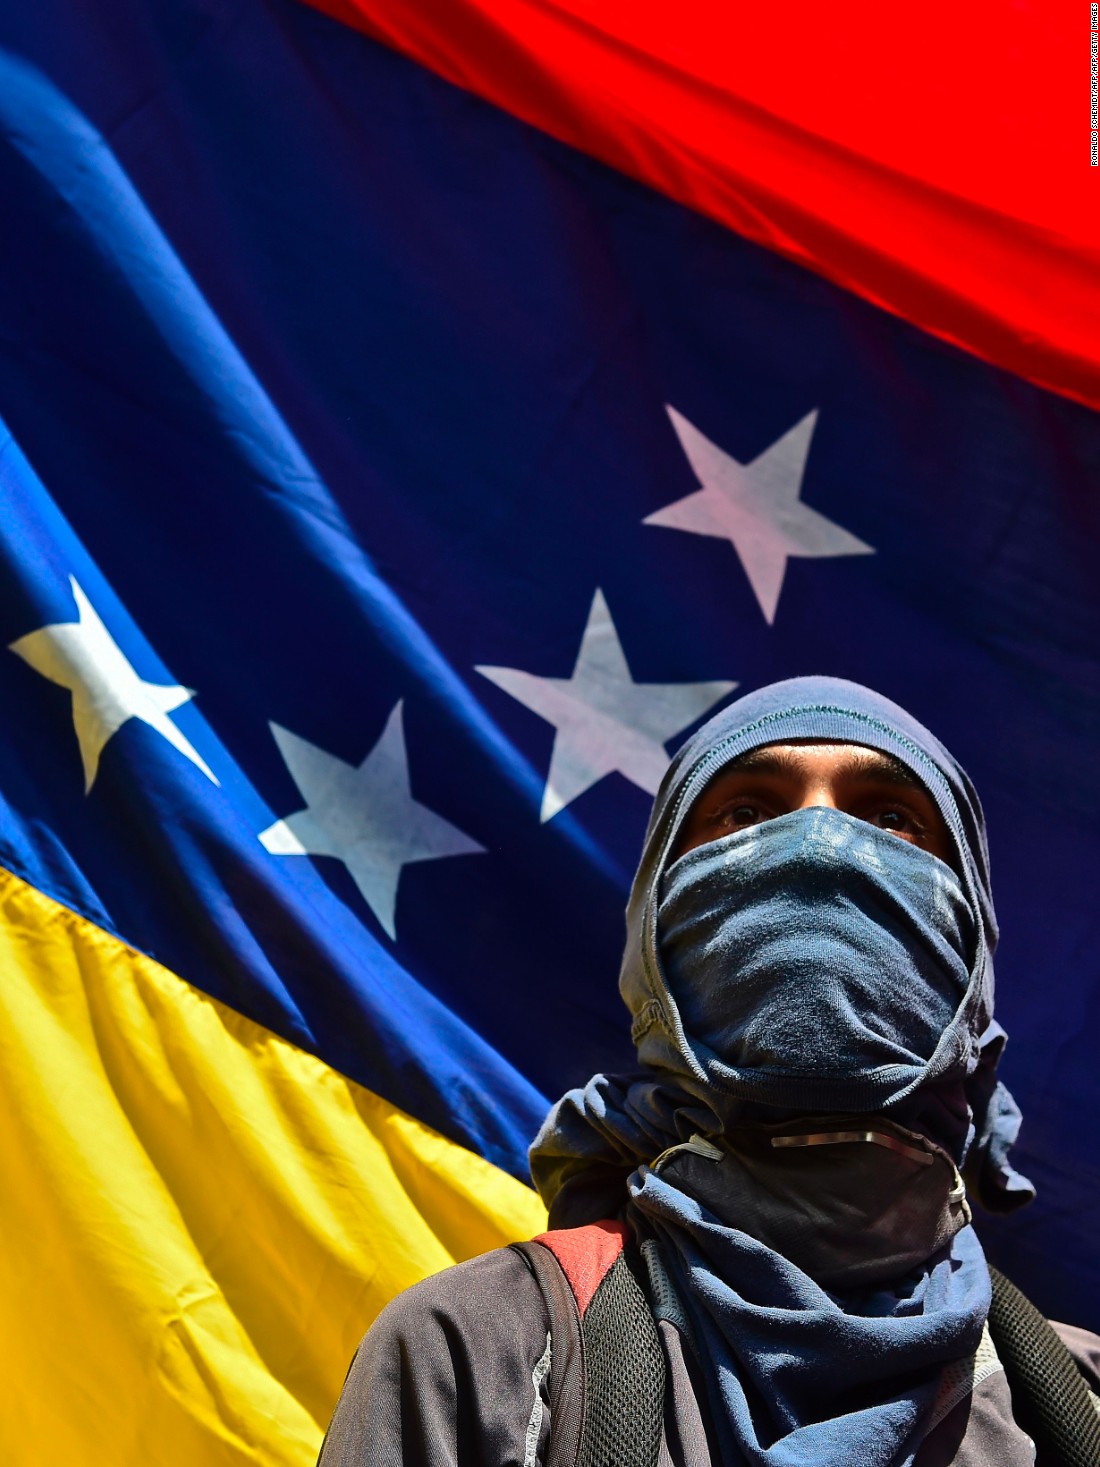 https://www.hermanntertsch.es/wp-content/uploads/sites/5/2021/03/170427215522-cnnee-venezuela-crisis-manifestaciones-detenciones-bandera-protestas-super-34.jpeg